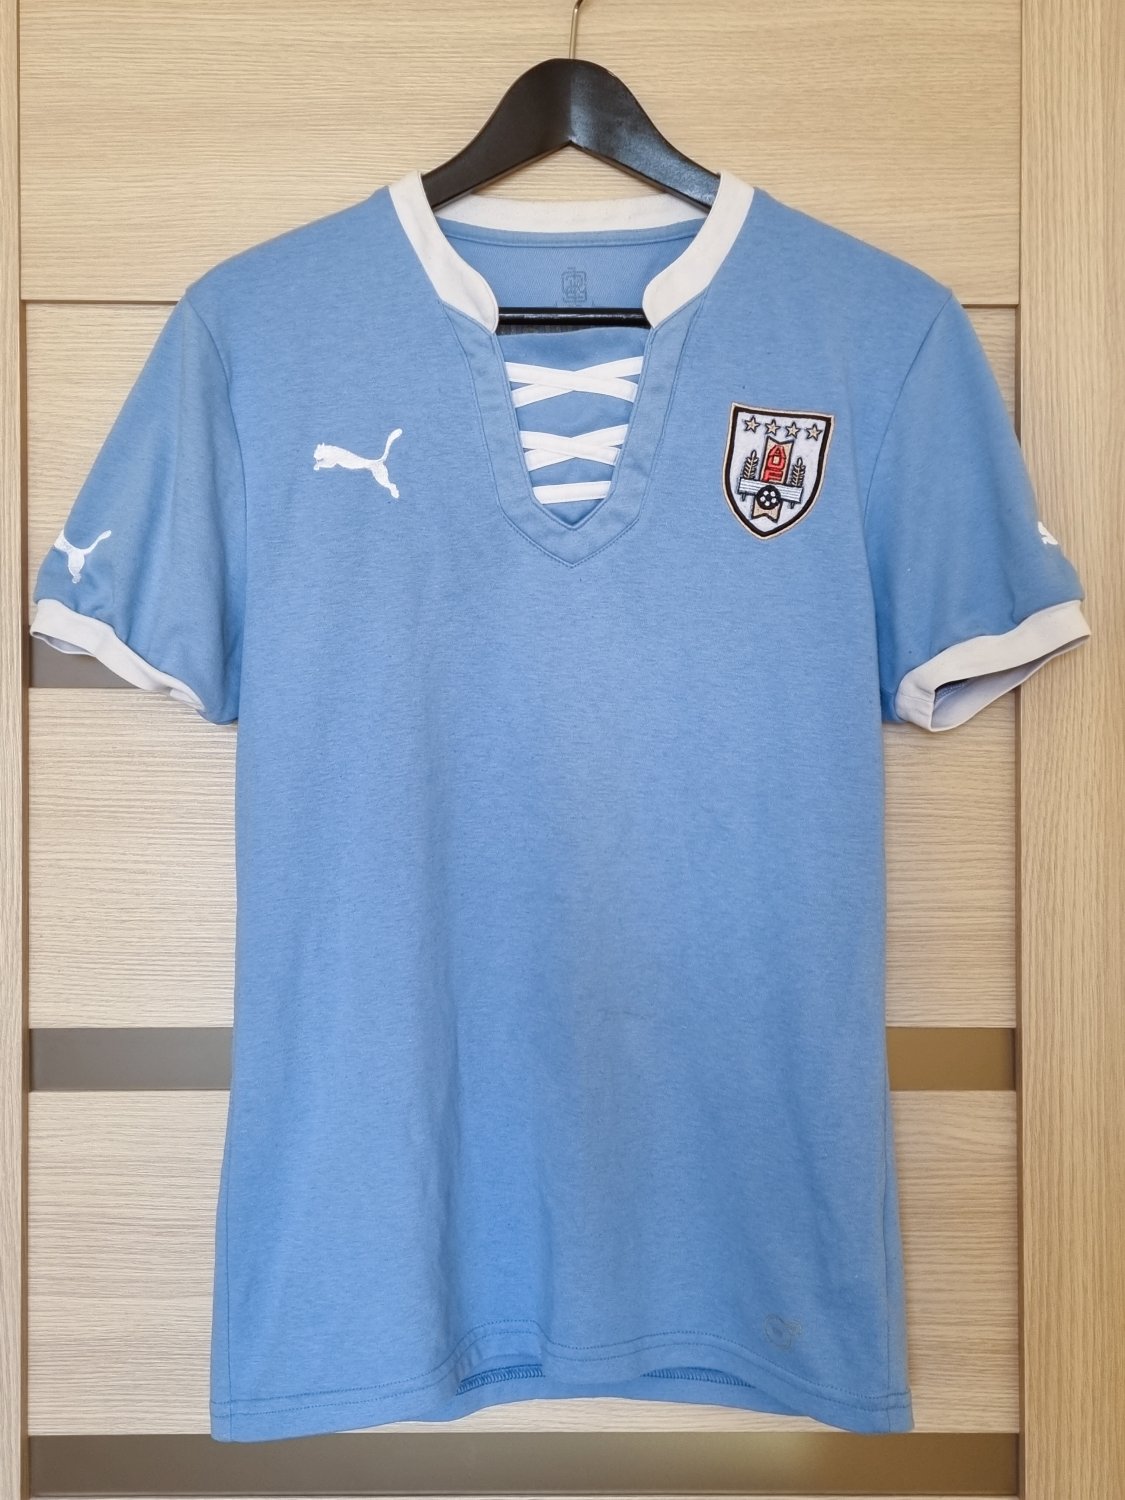 Ananiver vaso Elástico Uruguay Home Camiseta de Fútbol 2012 - 2013.